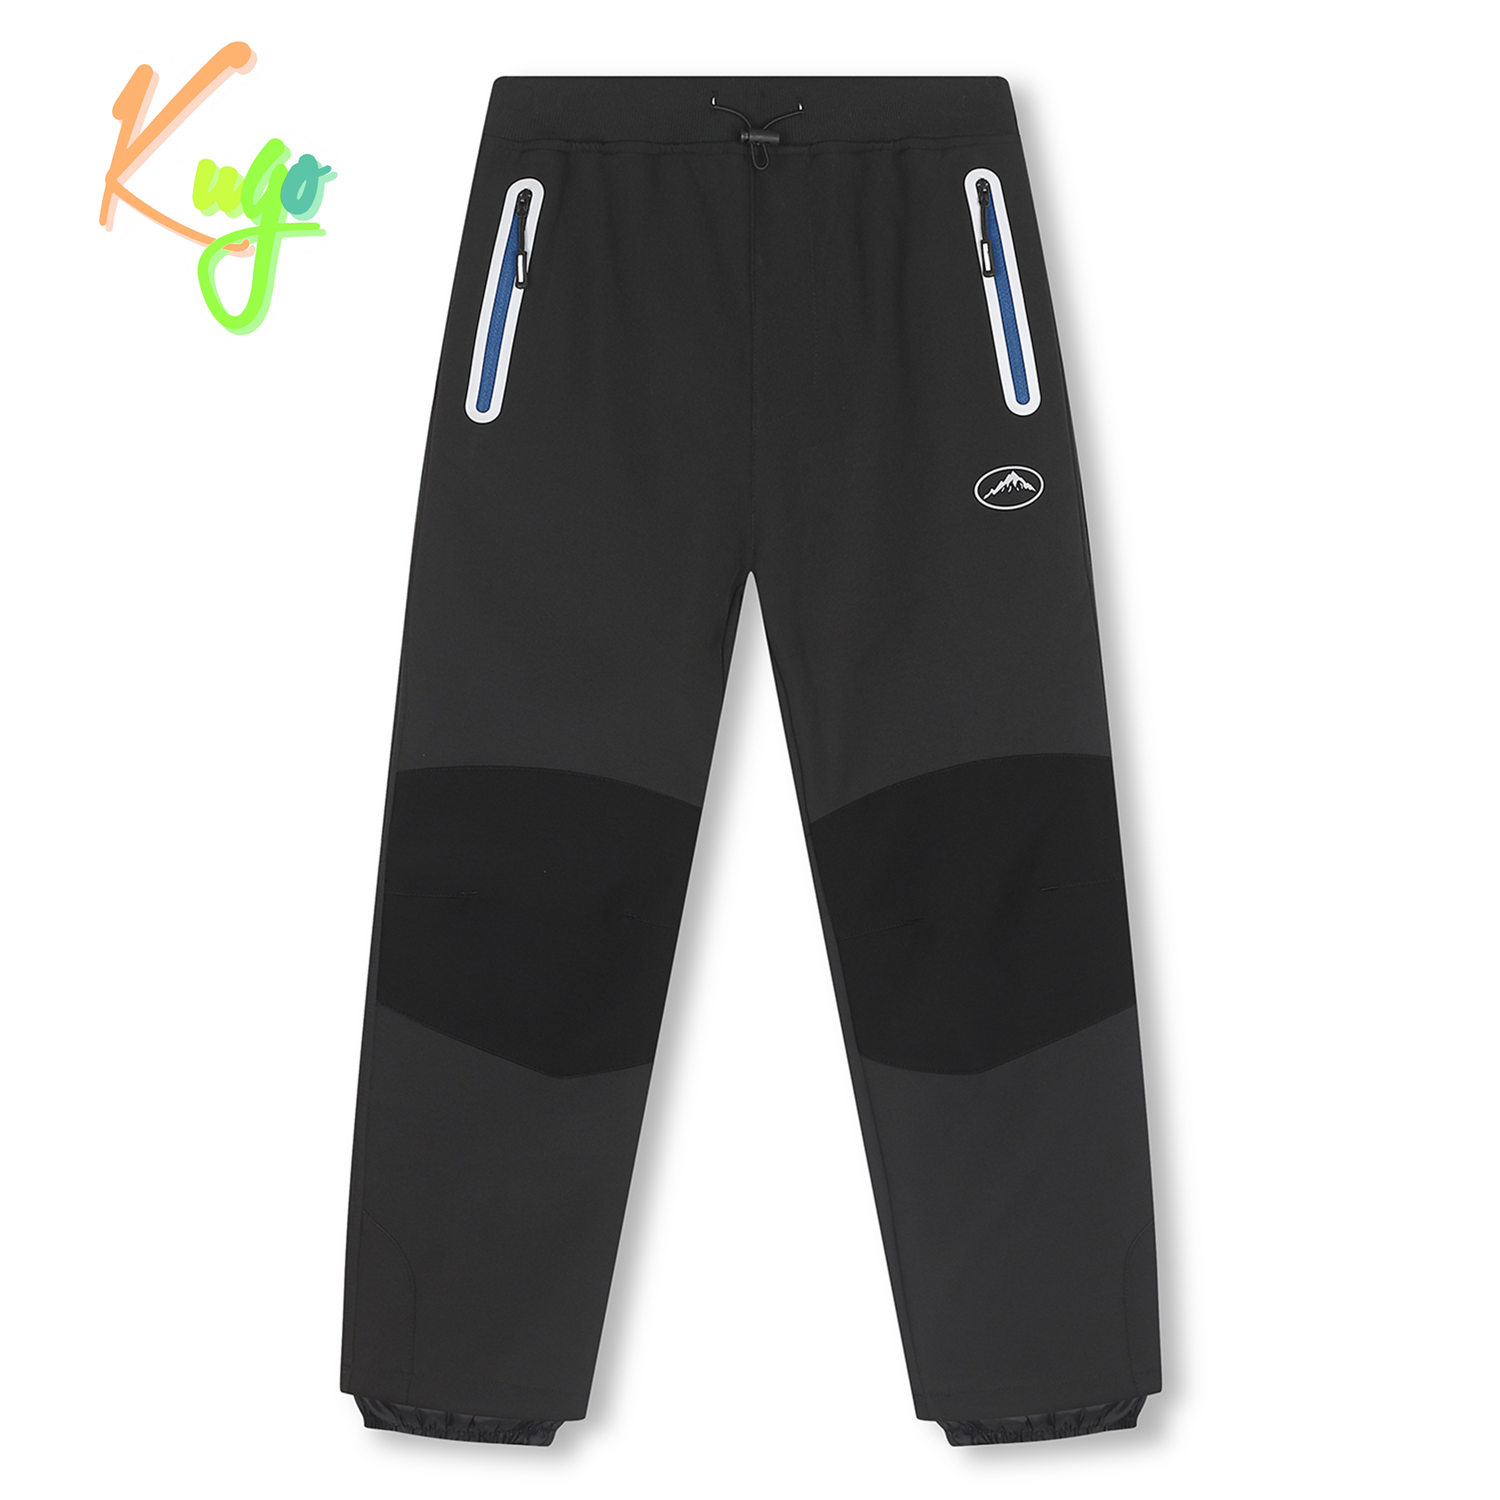 Chlapecké softshellové kalhoty, zateplené - KUGO H5517, tmavě šedá/modré zipy Barva: Šedá, Velikost: 146